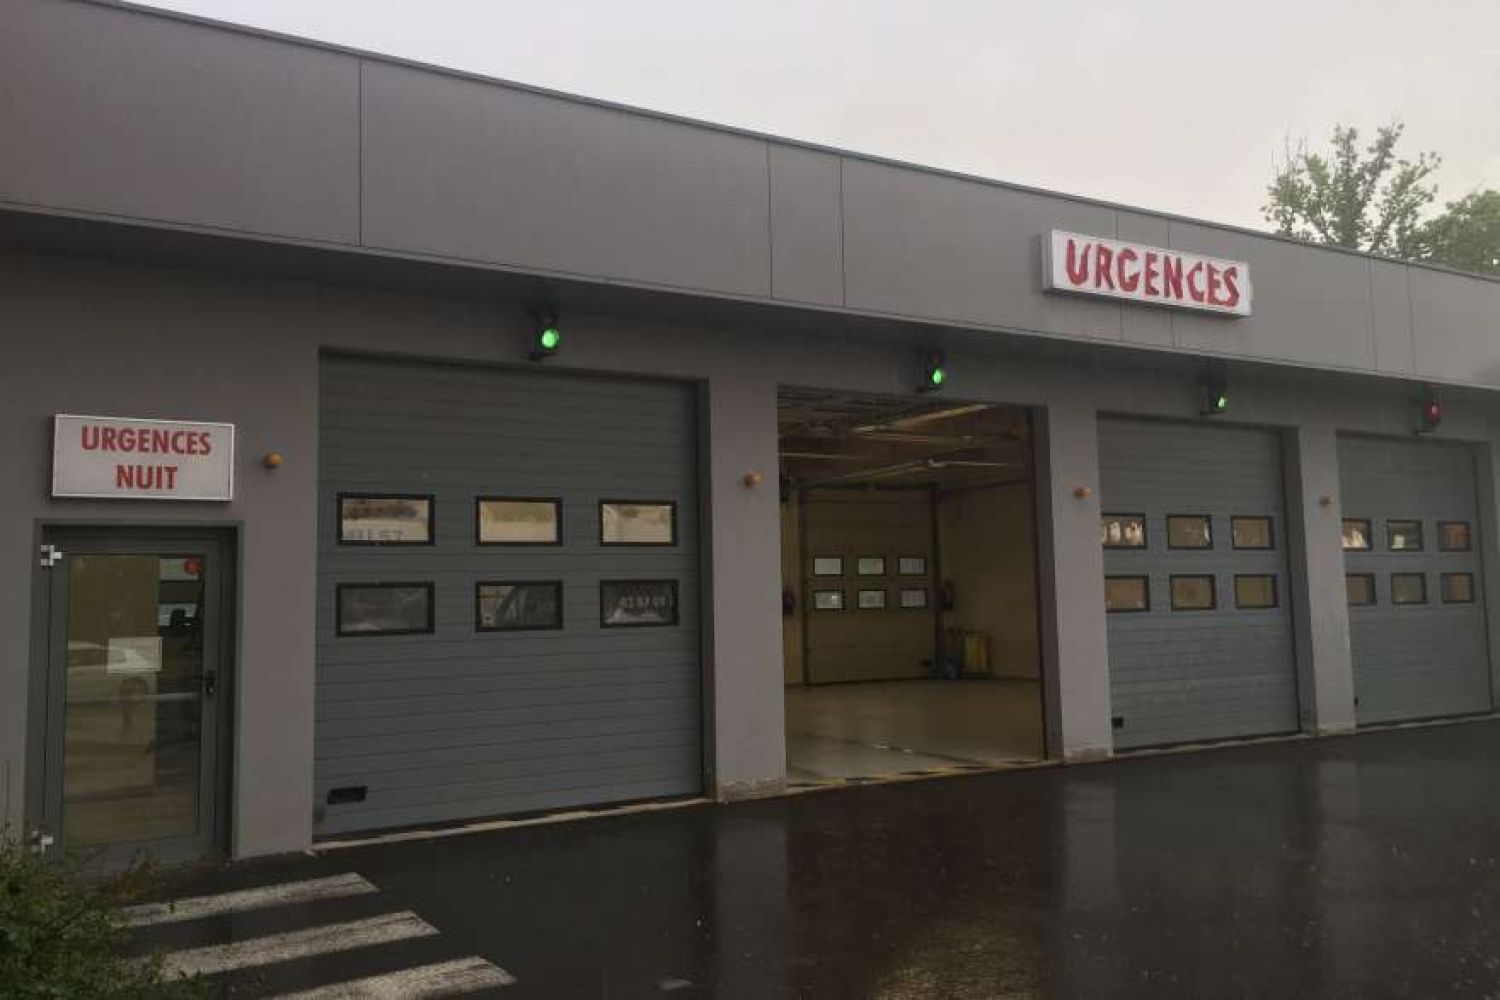 Le forfait patient urgences bientôt pris en charge par le régime local d'Alsace-Moselle